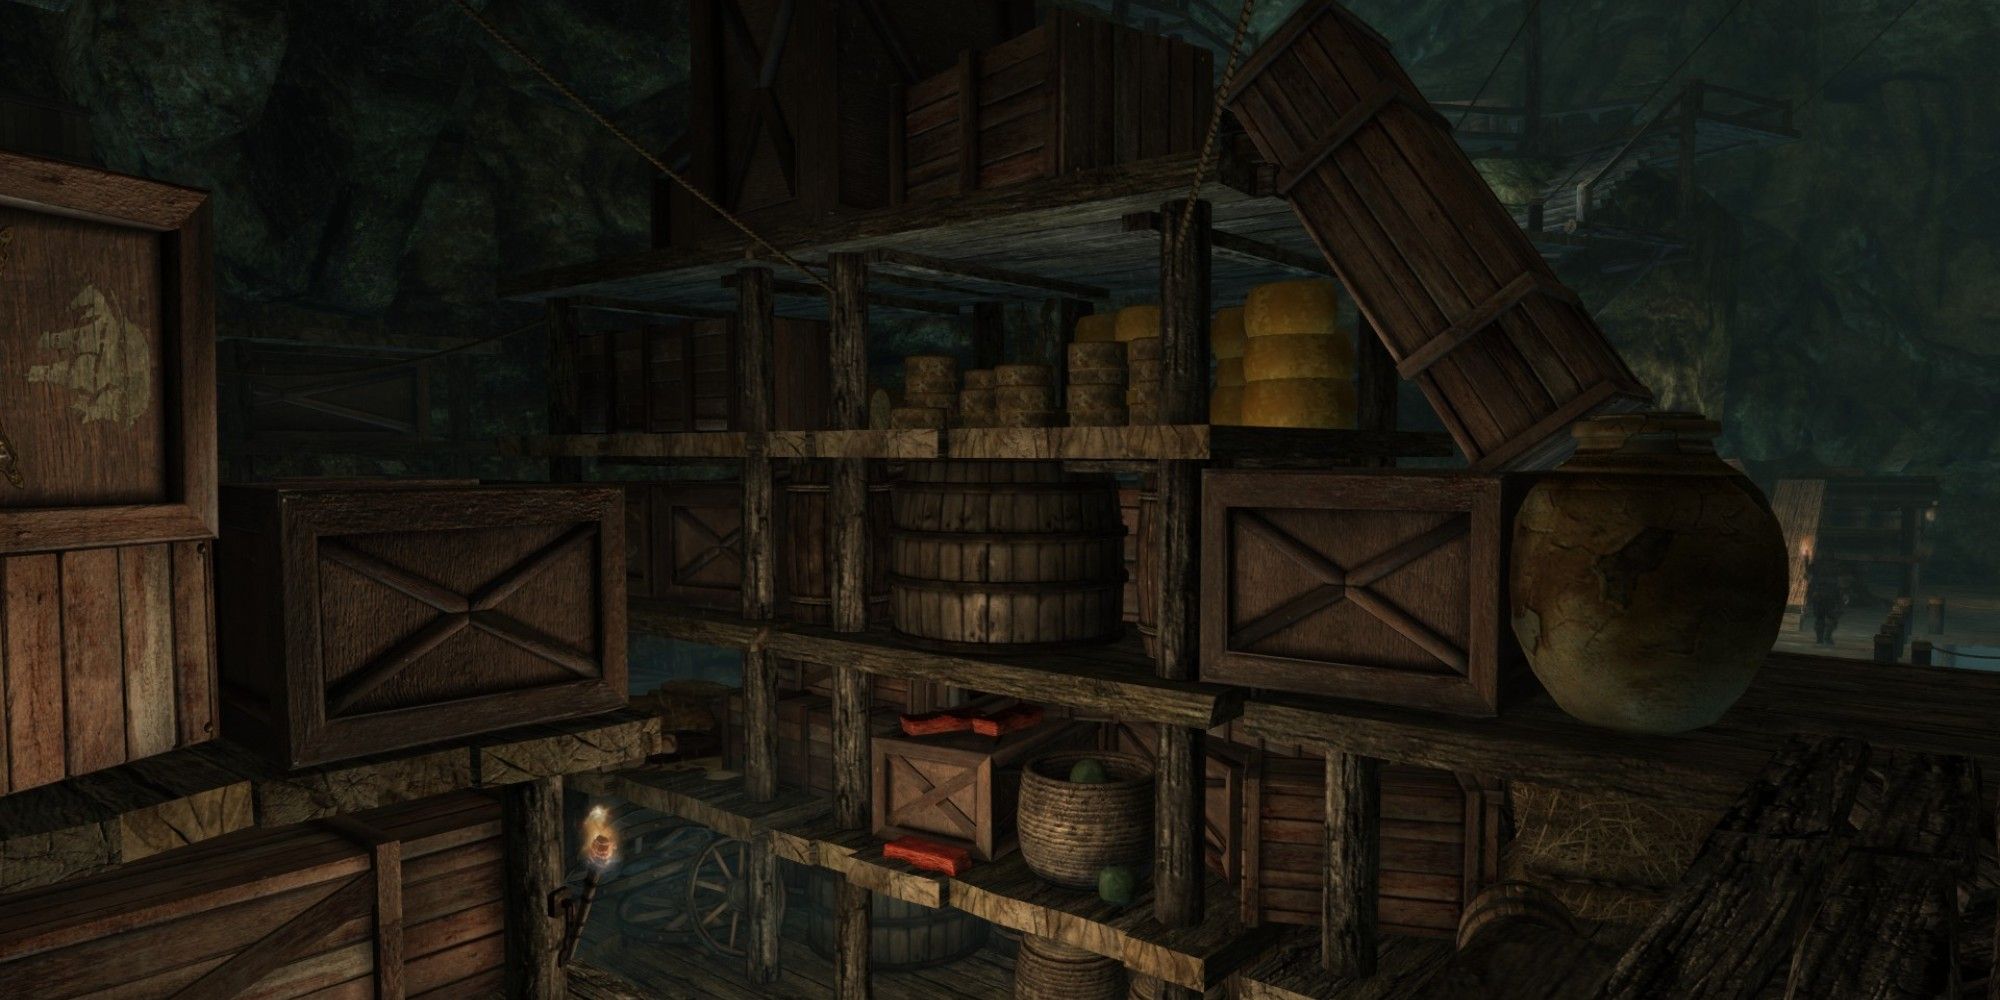 Skyrim screenshot of East Empire Company warehouse shelves.